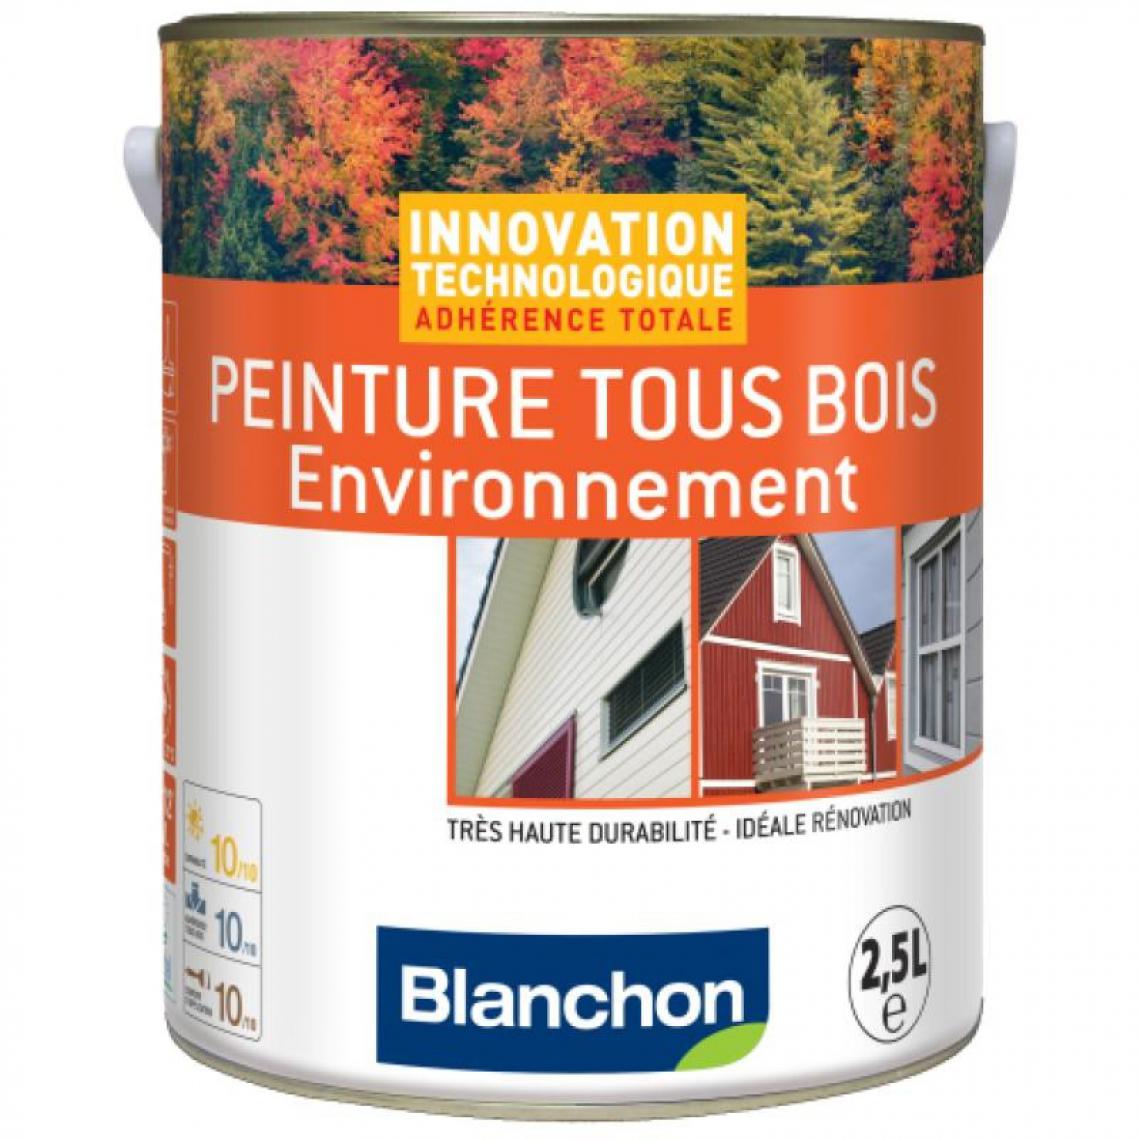 Blanchon - Peinture microporeuse hydrofuge Tous Bois Environnement, gris clair 7035, bidon - Produit de finition pour bois